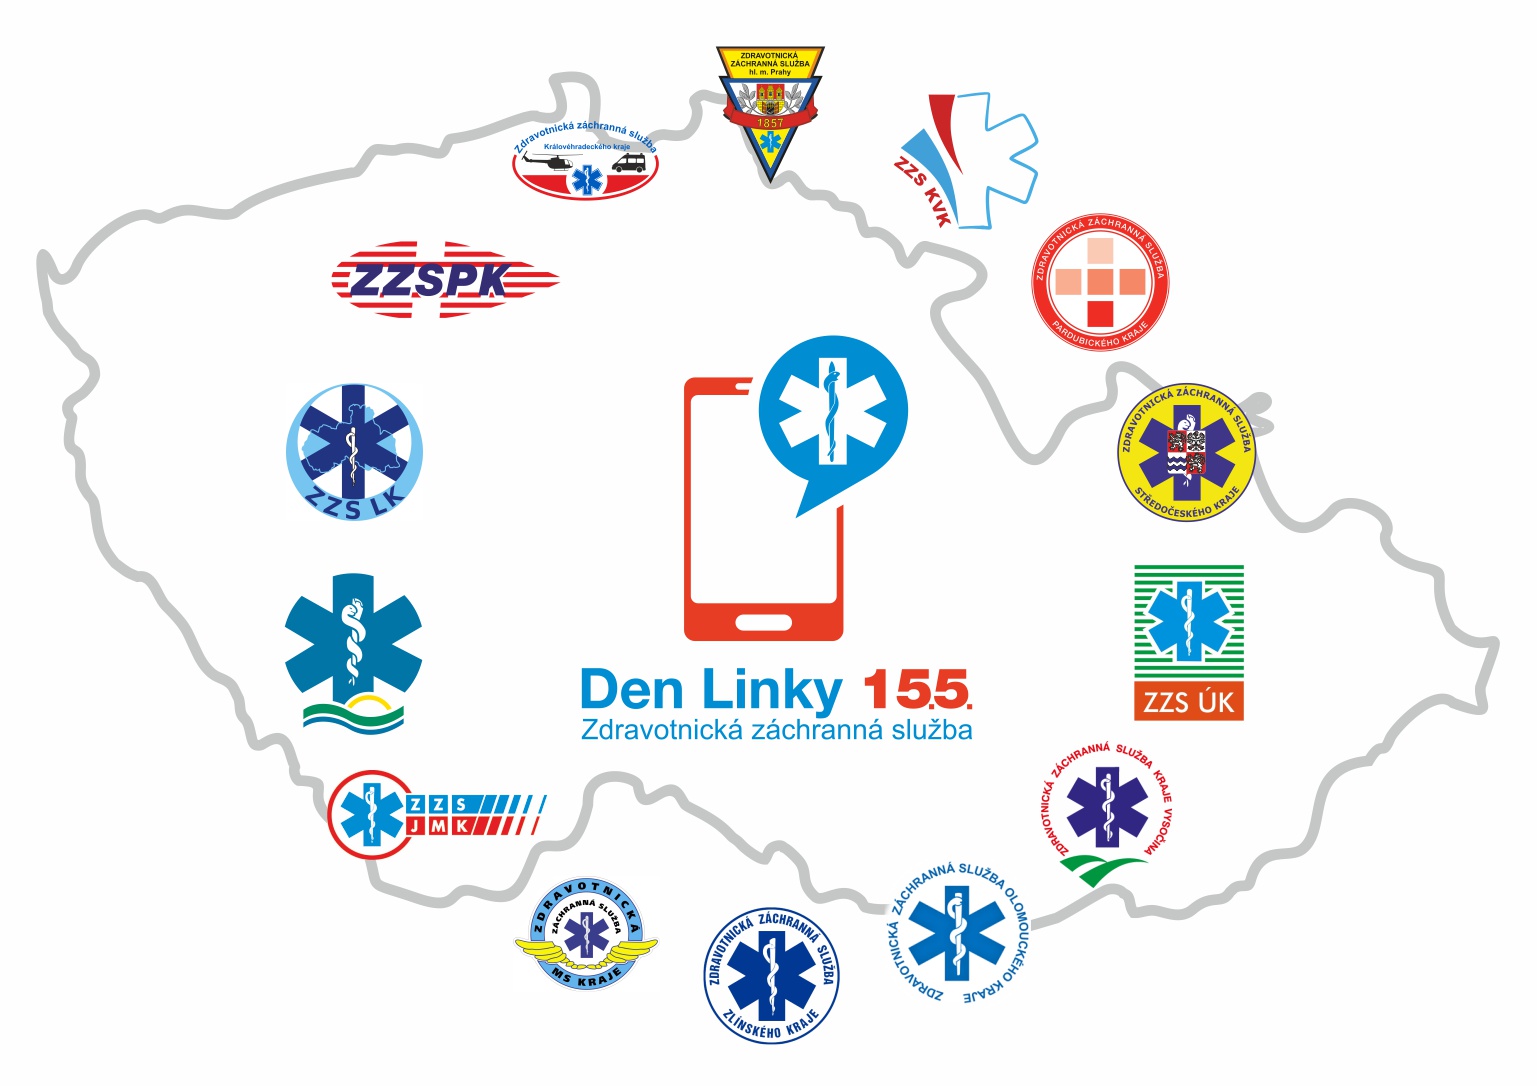 Mapa ČR s logy všech ZZS a logem Dne linky 155